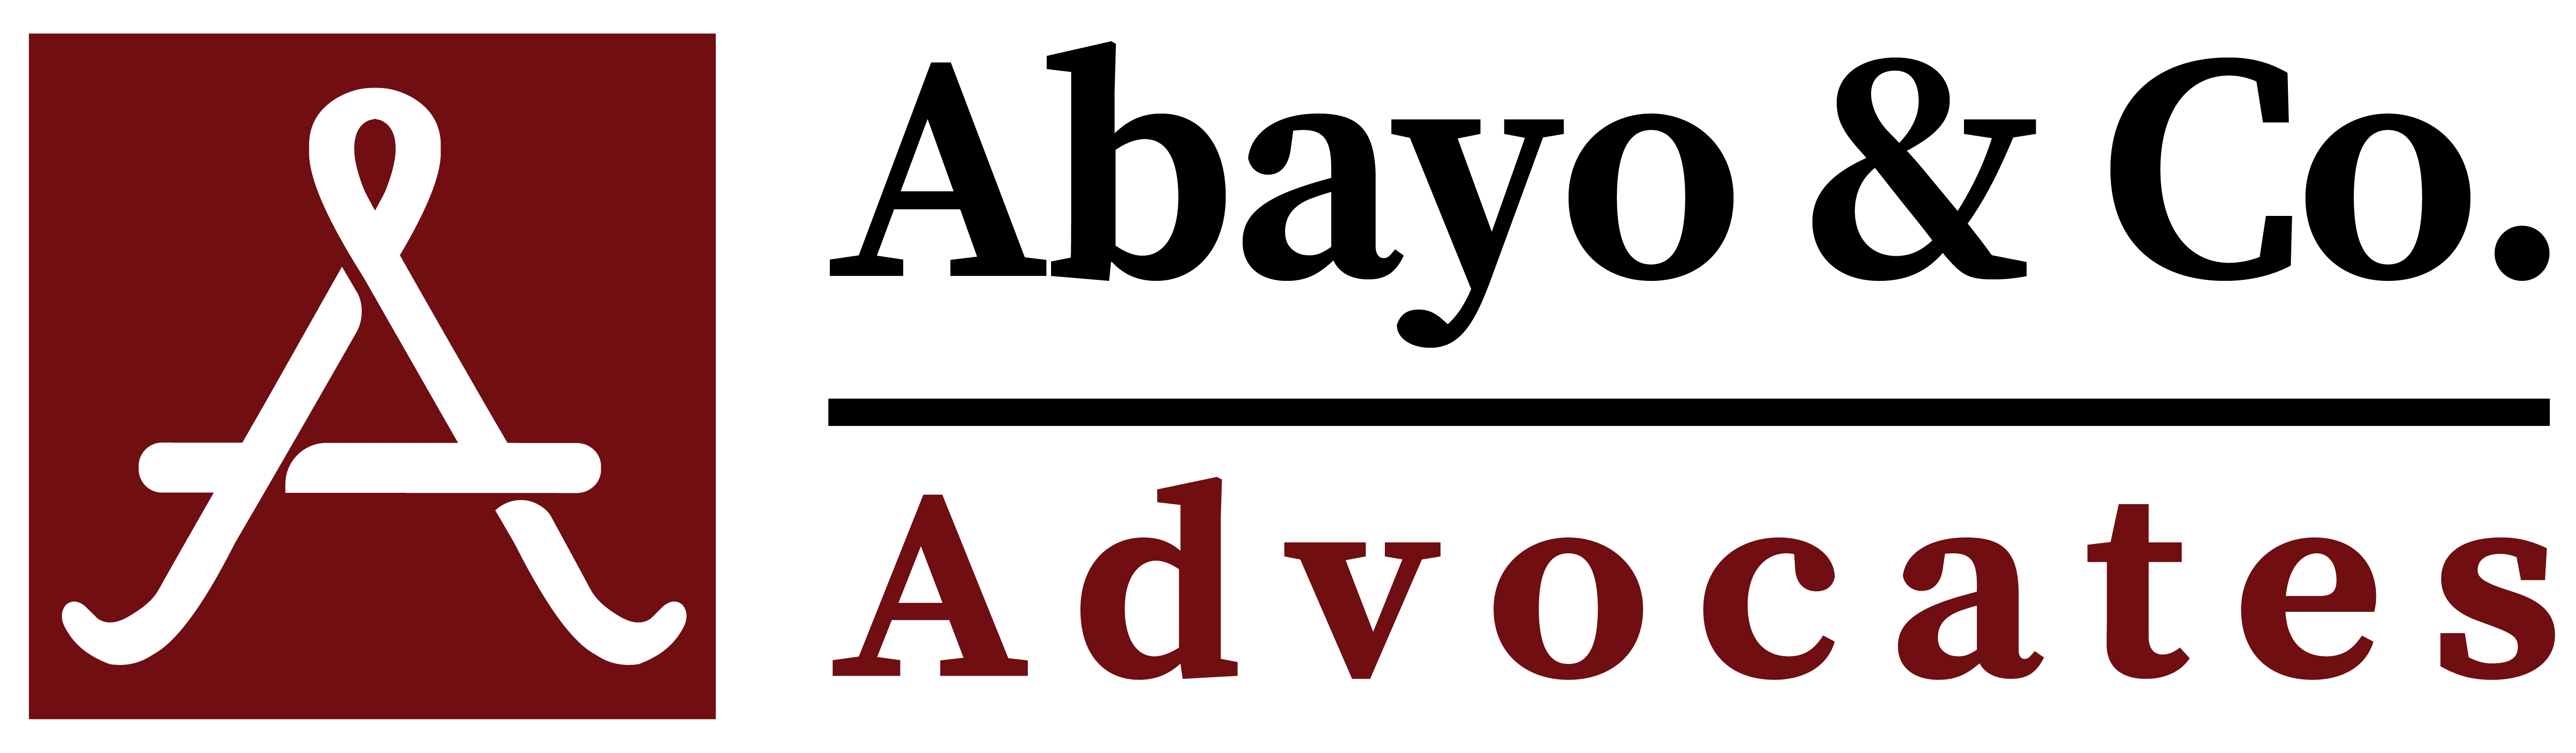 Abayo & Co. Advocates Logo